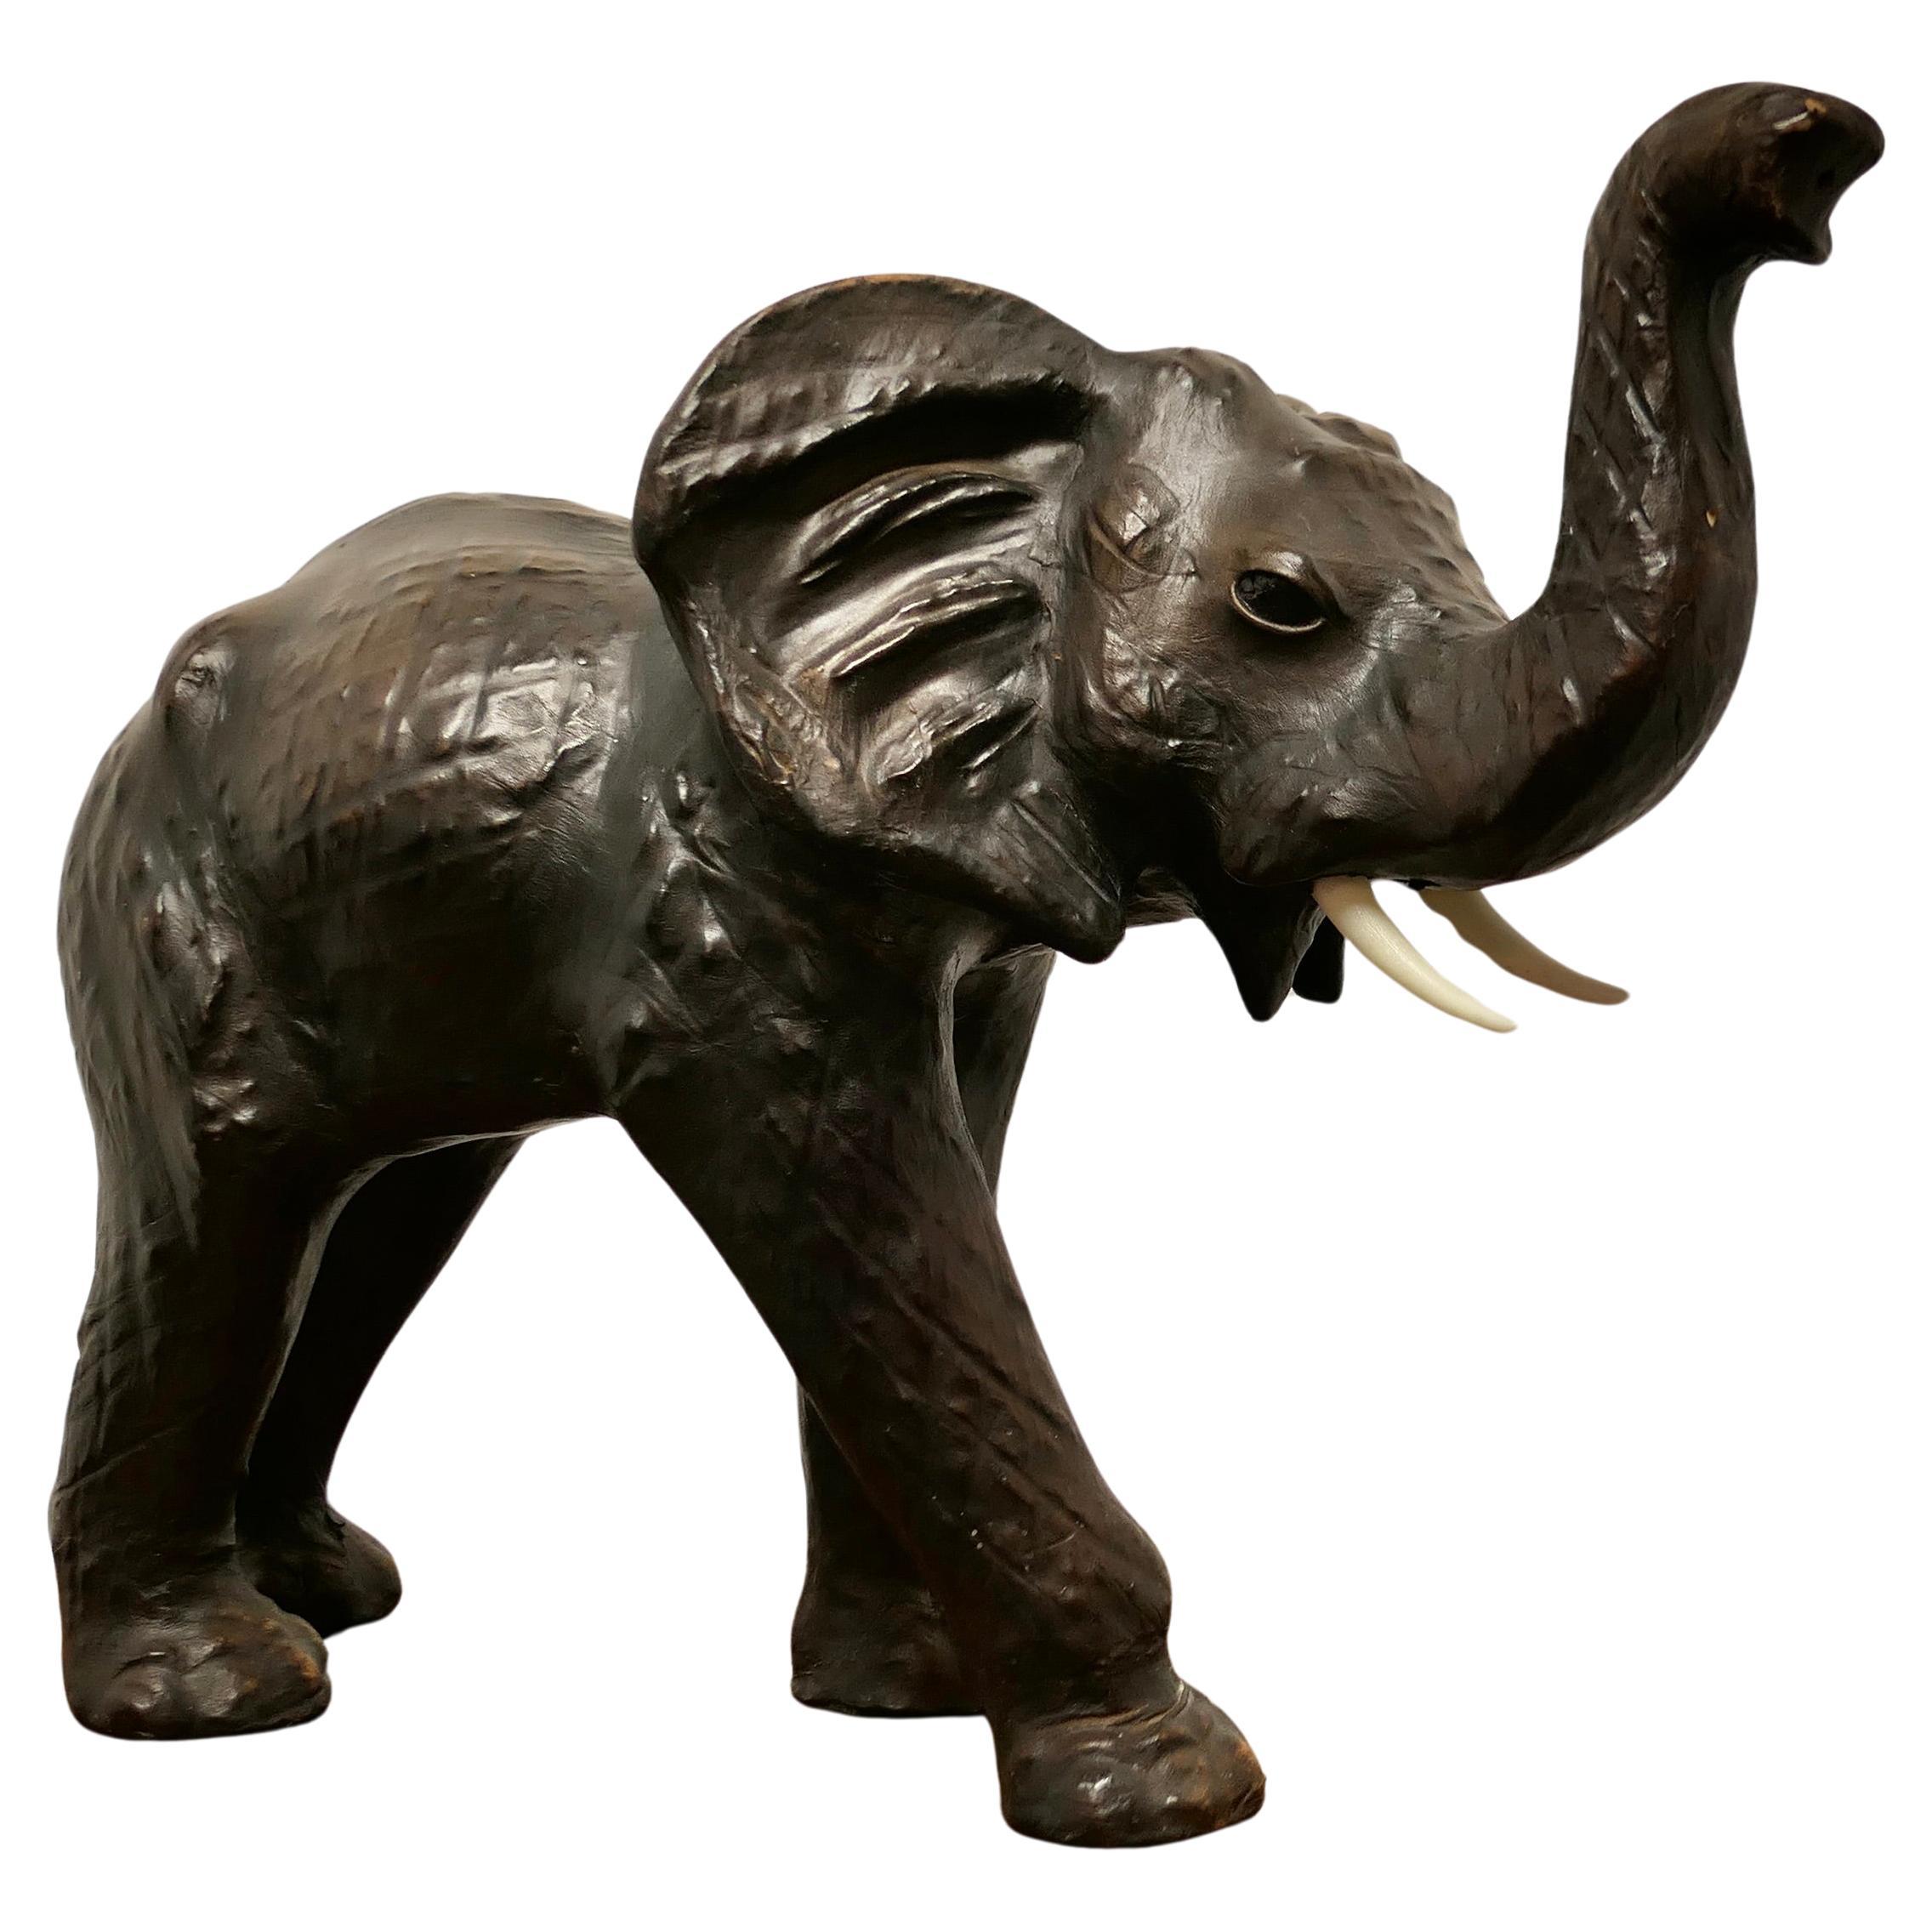  Kunsthandwerkliches Ledermodell eines Elefanten aus Leder   Jungbulle im Angebot